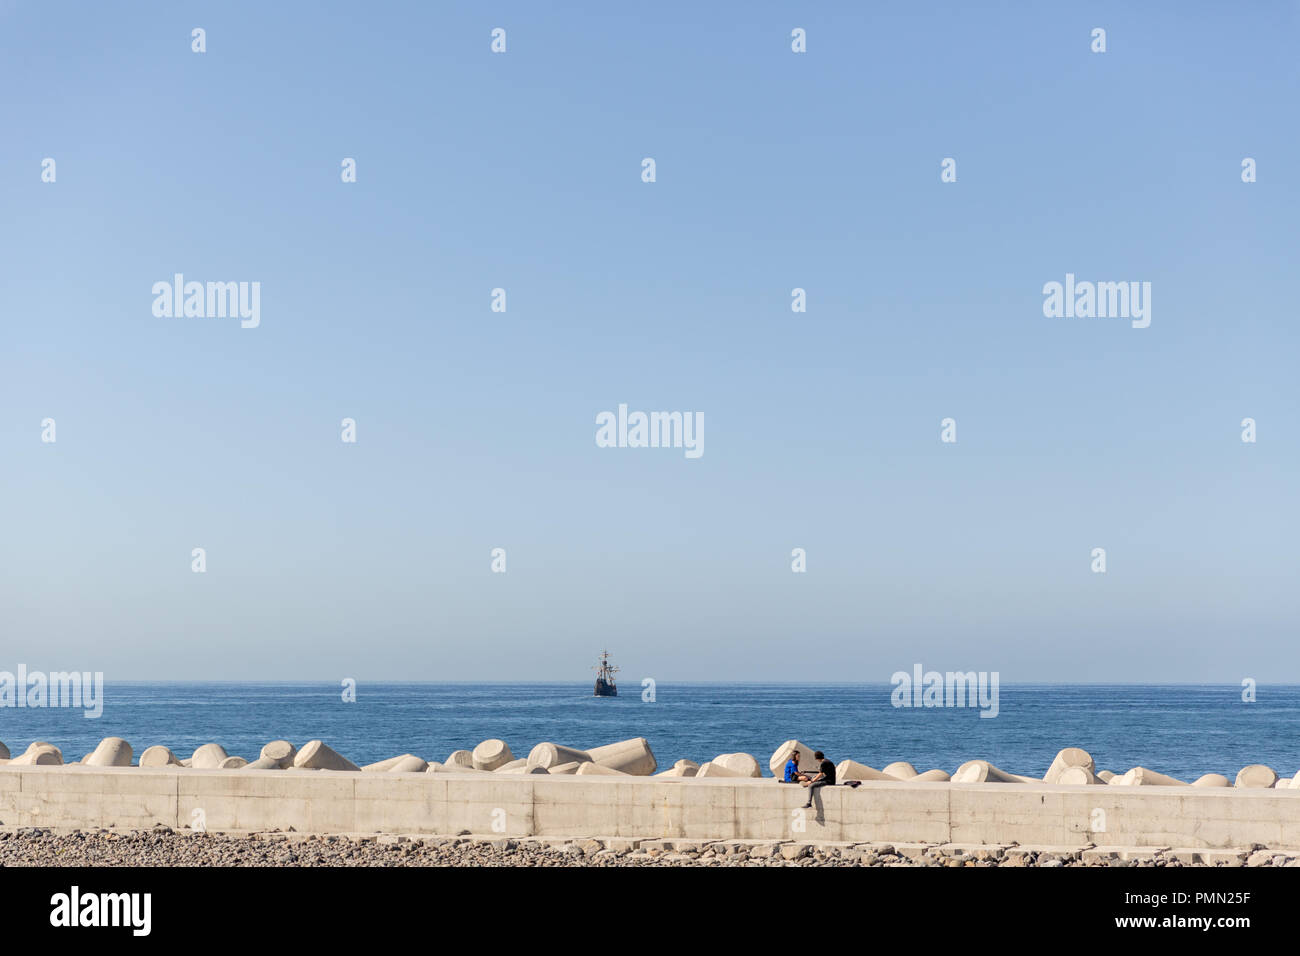 Coppia eterosessuale appendere fuori, seduti insieme sulla parete del mare, con molto il mare blu e una nave a vela in distanza Foto Stock